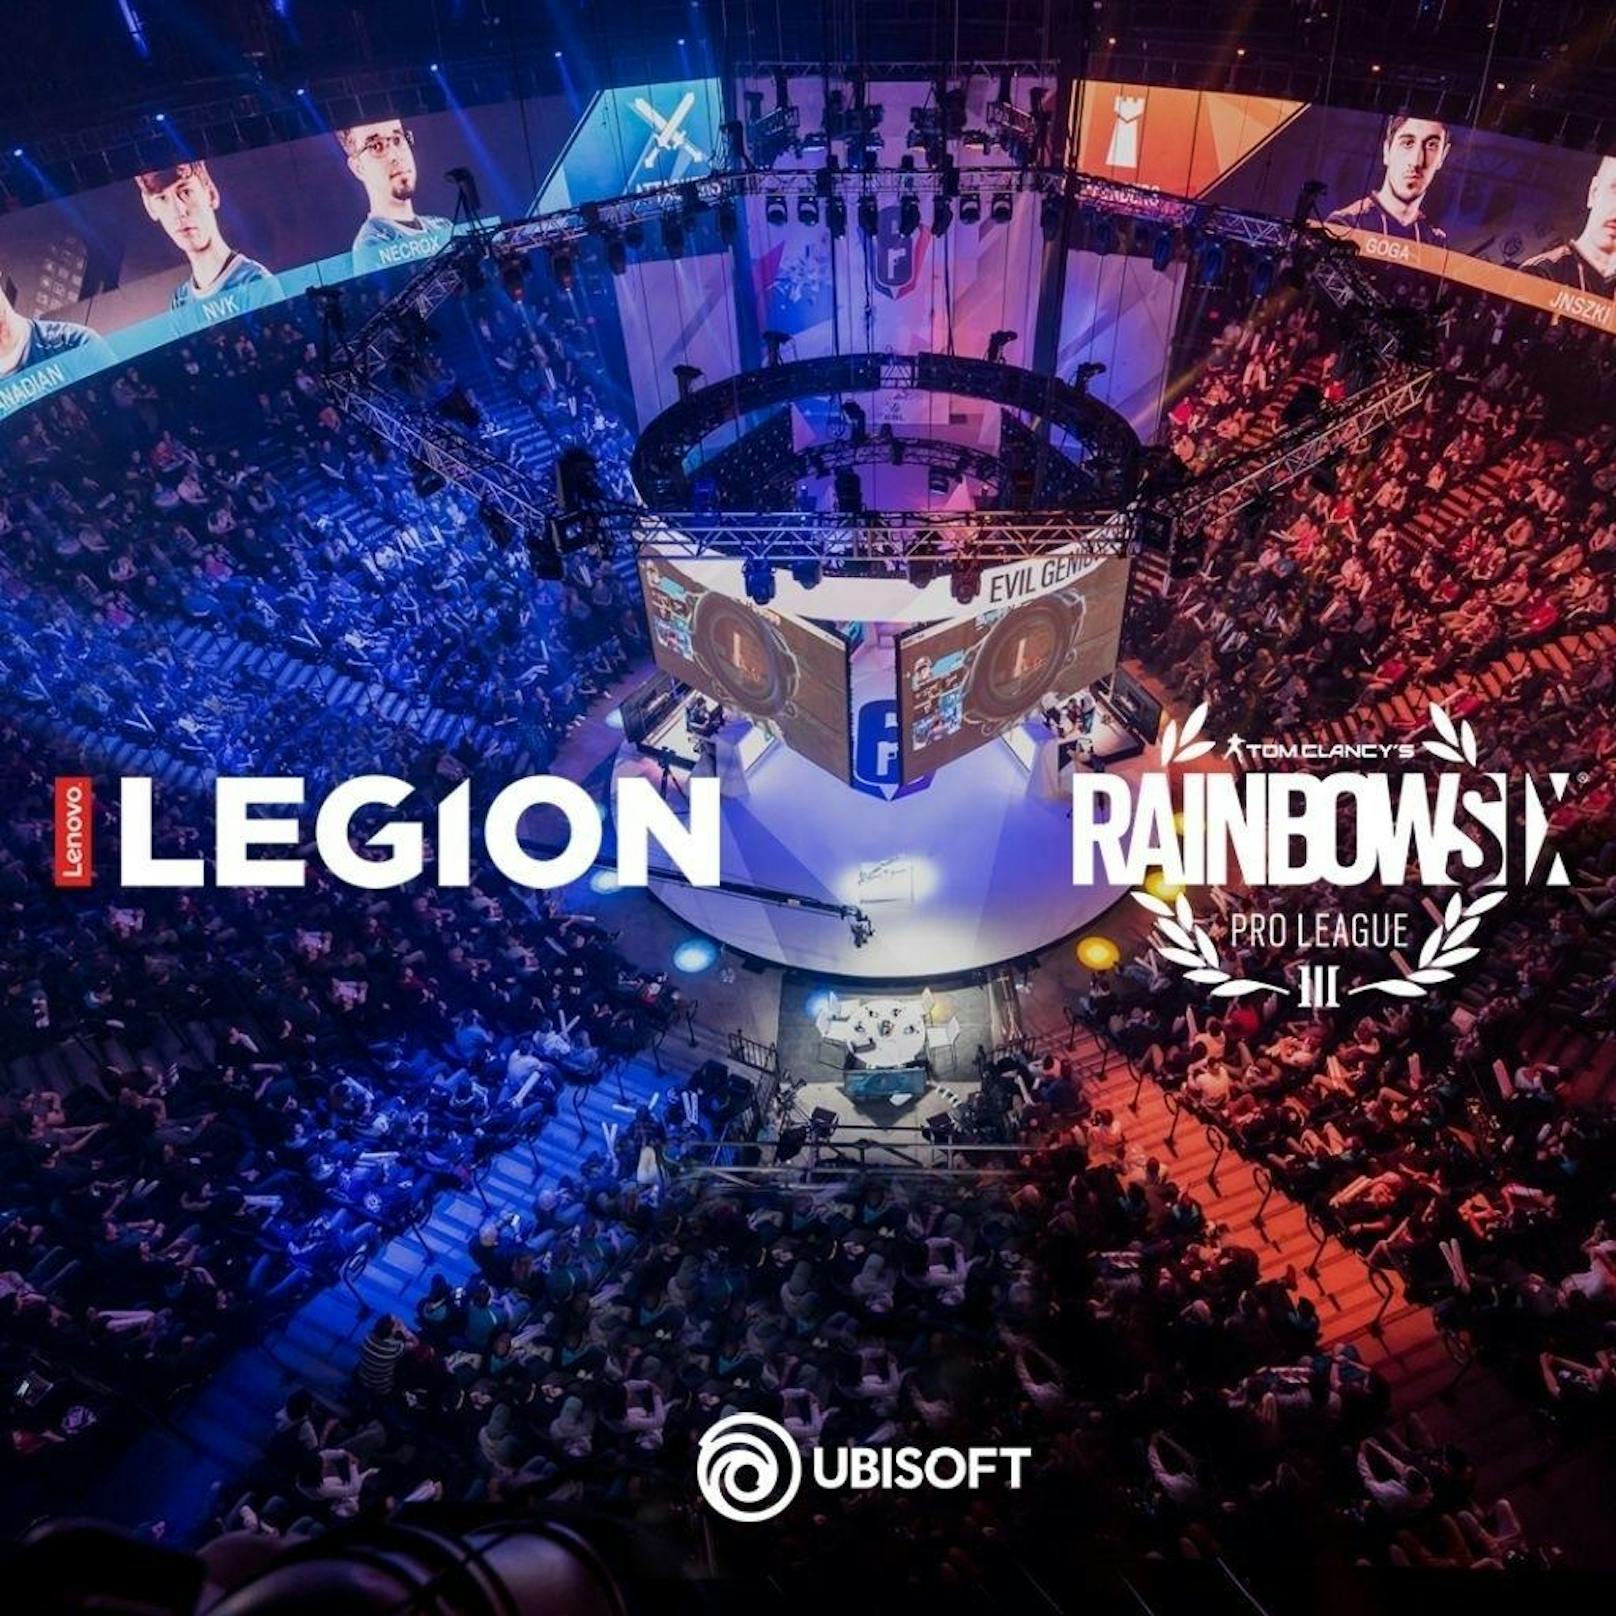 Ubisoft und Lenovo kündigten heute an, dass Lenovo Legion der offizielle weltweite PC- und Monitor-Sponsor der Tom Clancy?s Rainbow Six Siege Pro League und Majors sein wird. Die exklusive Partnerschaft wird für die Dauer der Rainbow Six Siege Pro League Season, vom Frühjahr 2018 bis zum Frühjahr 2019, Bestand haben.